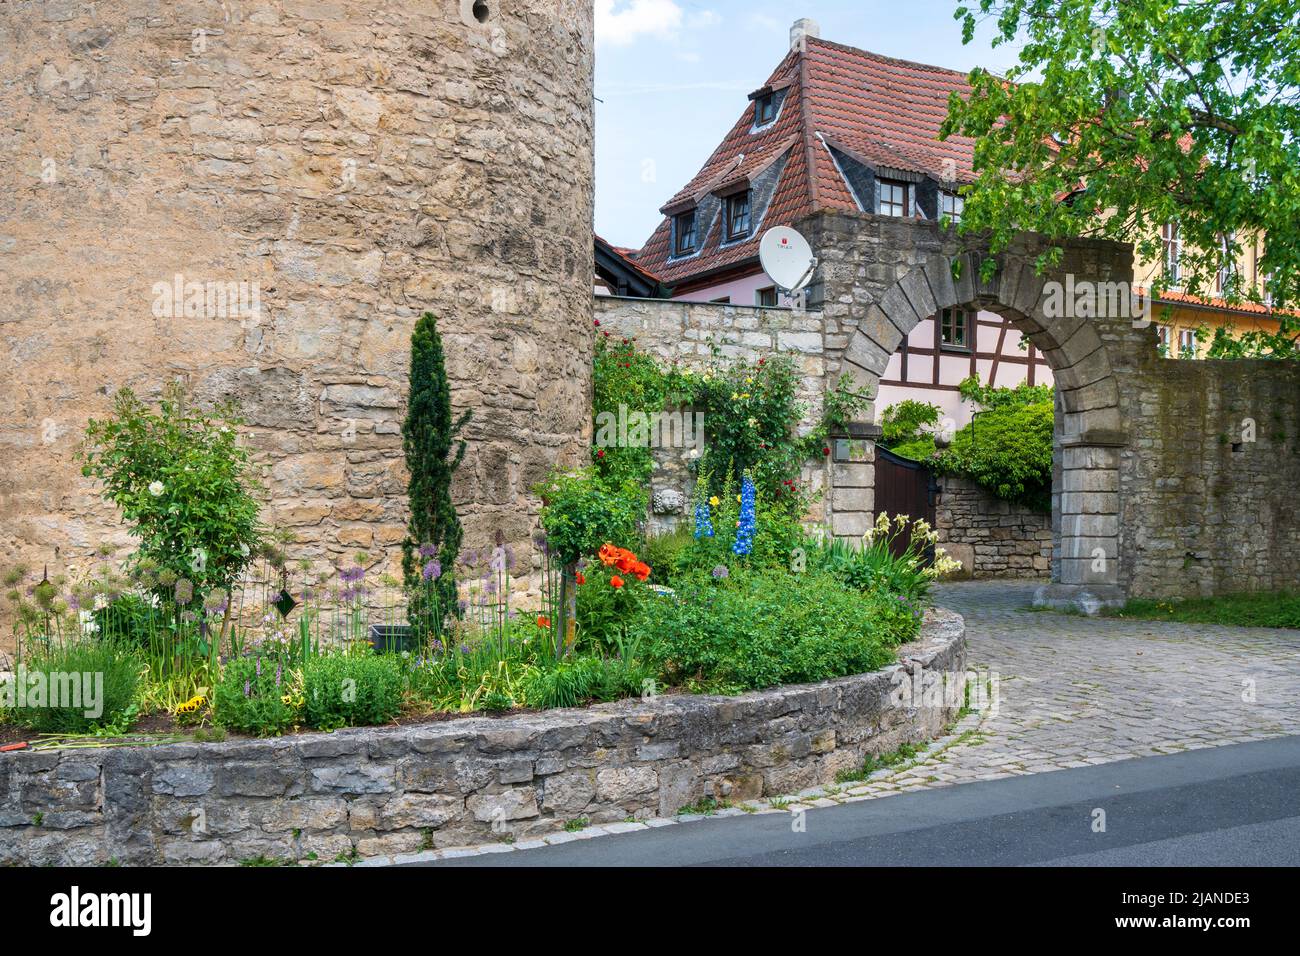 Die historische Altstadt von Sommerhausen in Unterfranken am Main mit malerischen Gebäuden innerhalb der Stadtmauer Stock Photo